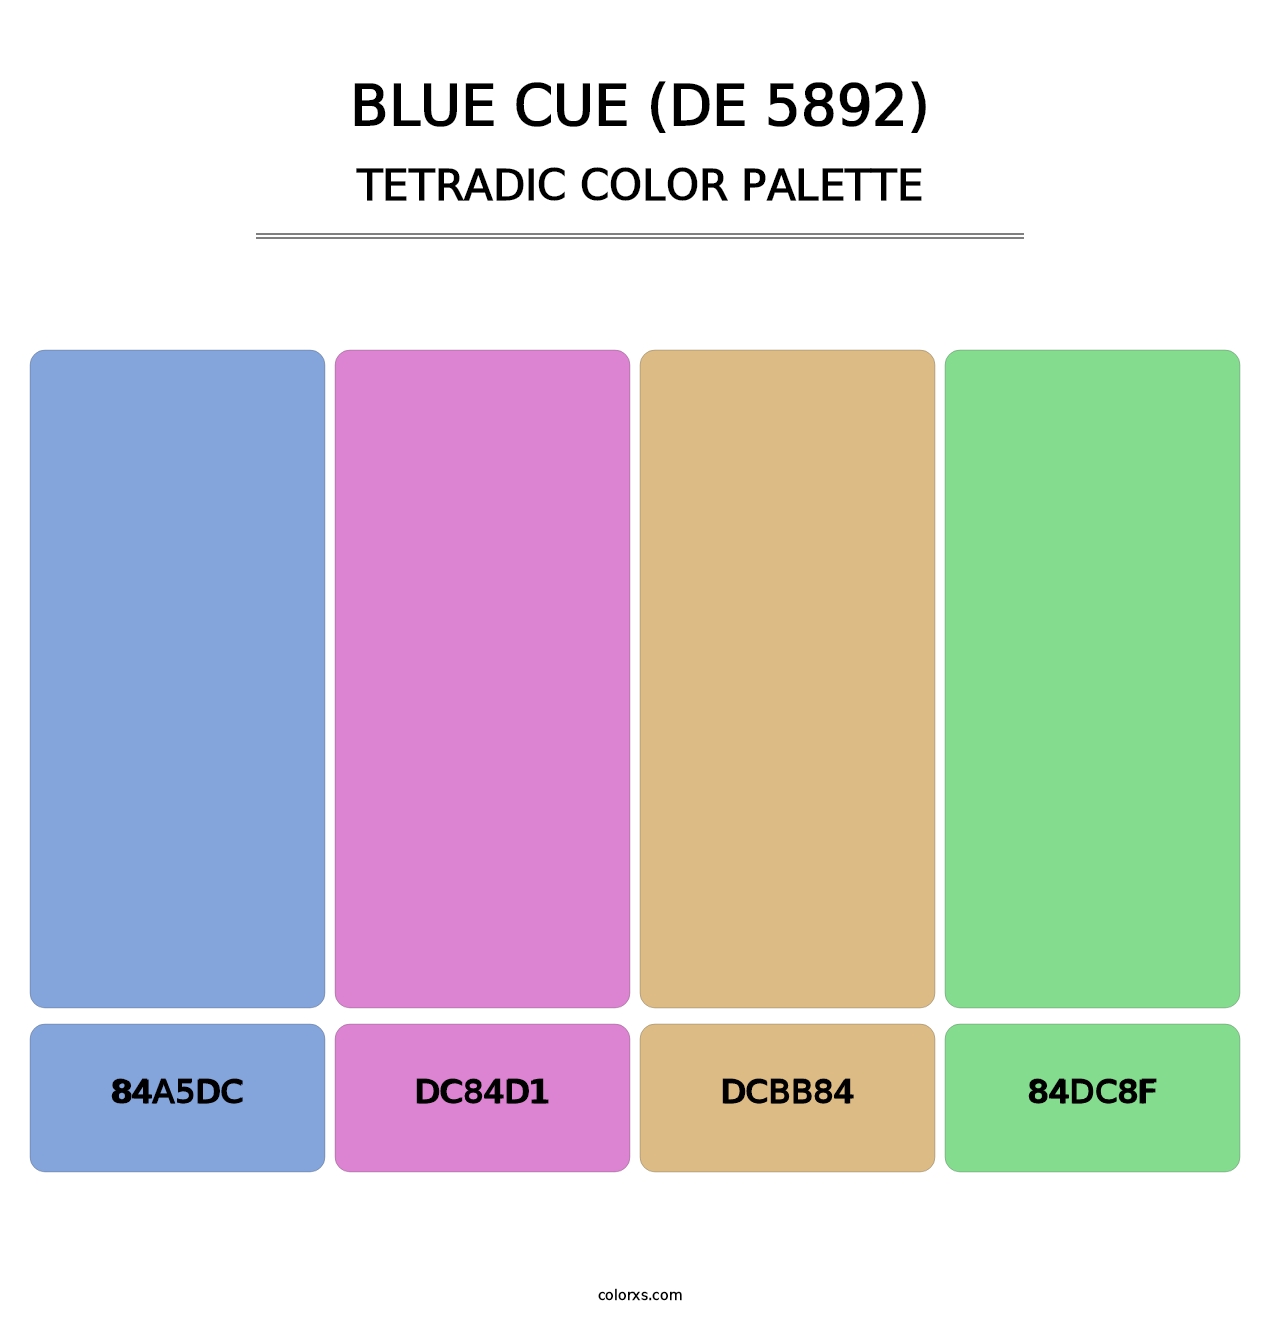 Blue Cue (DE 5892) - Tetradic Color Palette